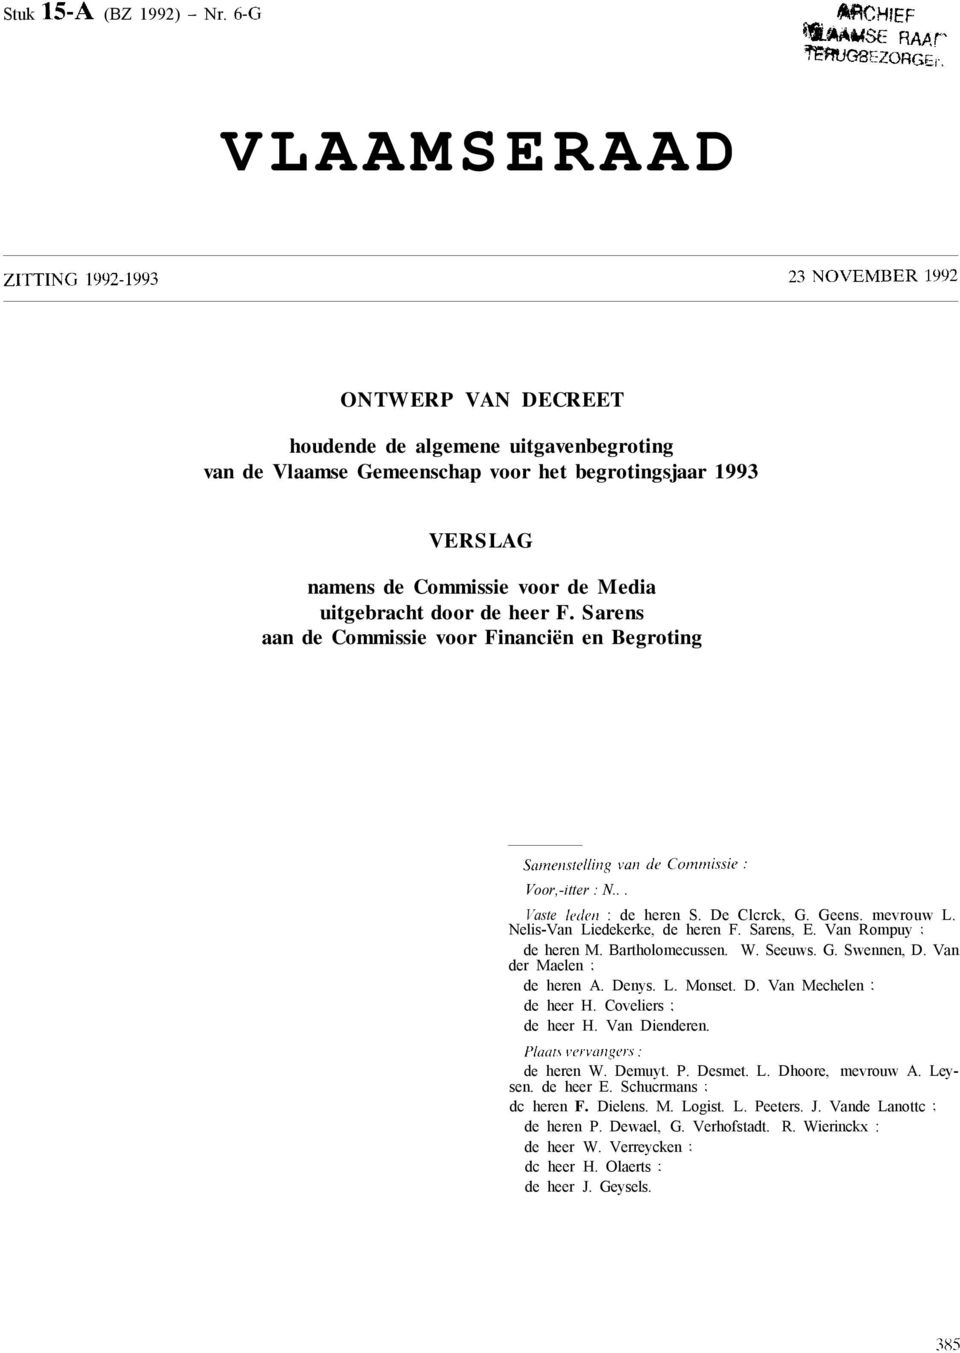 heer F. Sarens aan de Commissie voor Financiën en Begroting Voor-itter : N... Vaste fedez : de heren S. De Ccrck G. Geens. mevrouw L. Neis-Van Liedekerke de heren F. Sarens E. Van Rompuy ; de heren M.